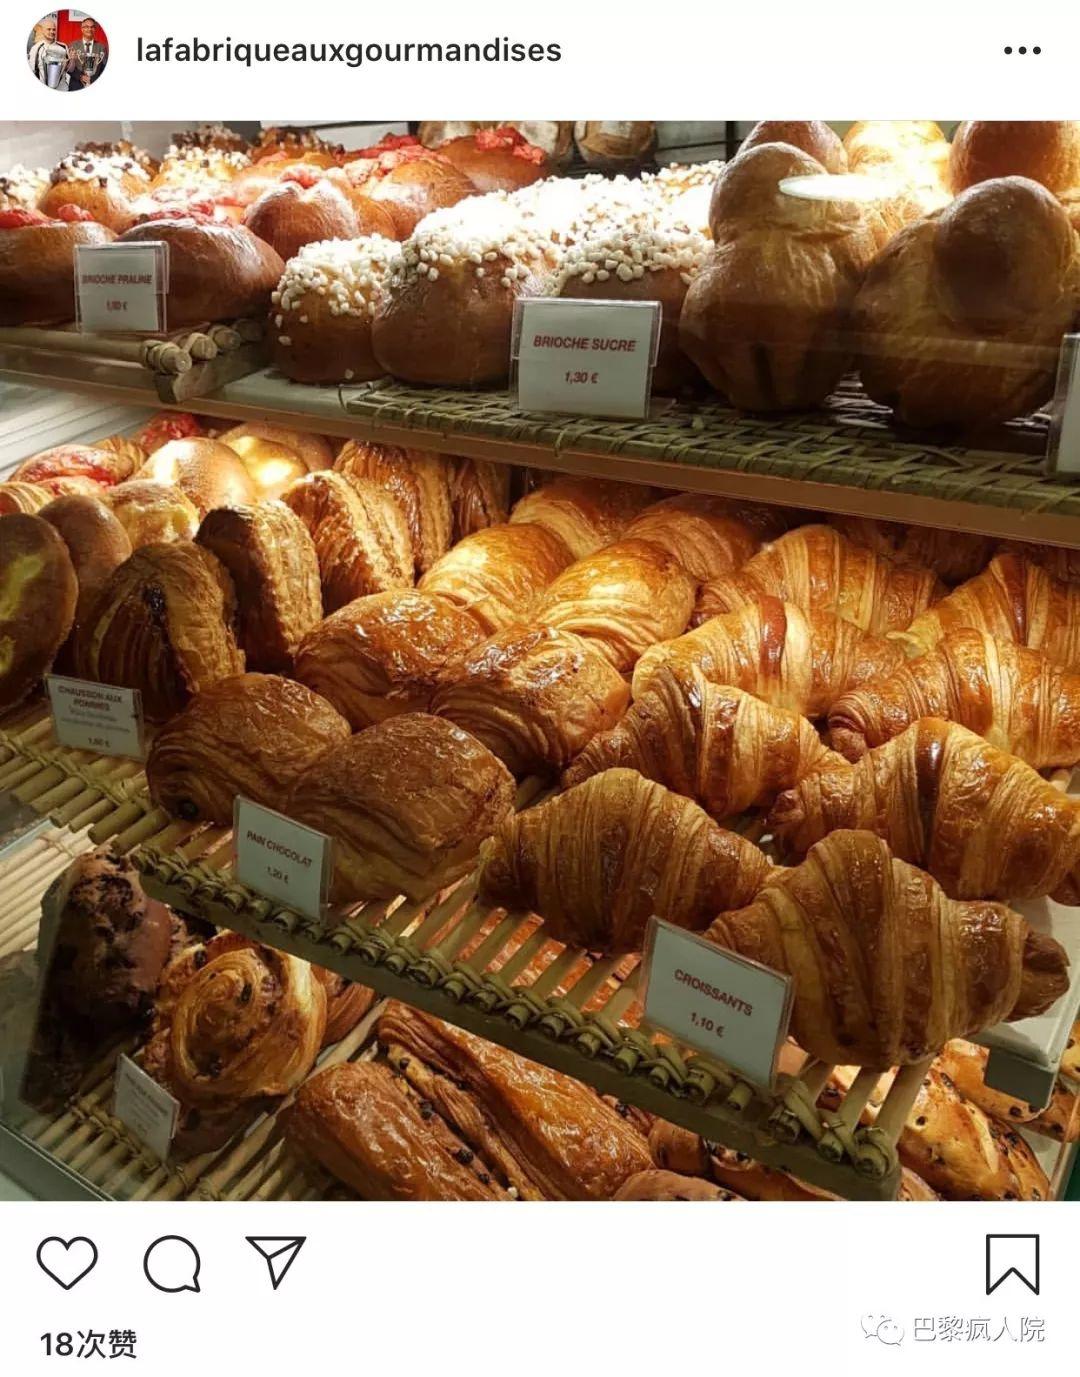 , 2019巴黎最好吃的羊角面包和法棍出炉啦！入驻爱丽舍宫的面包是什么味道？, My Crazy Paris